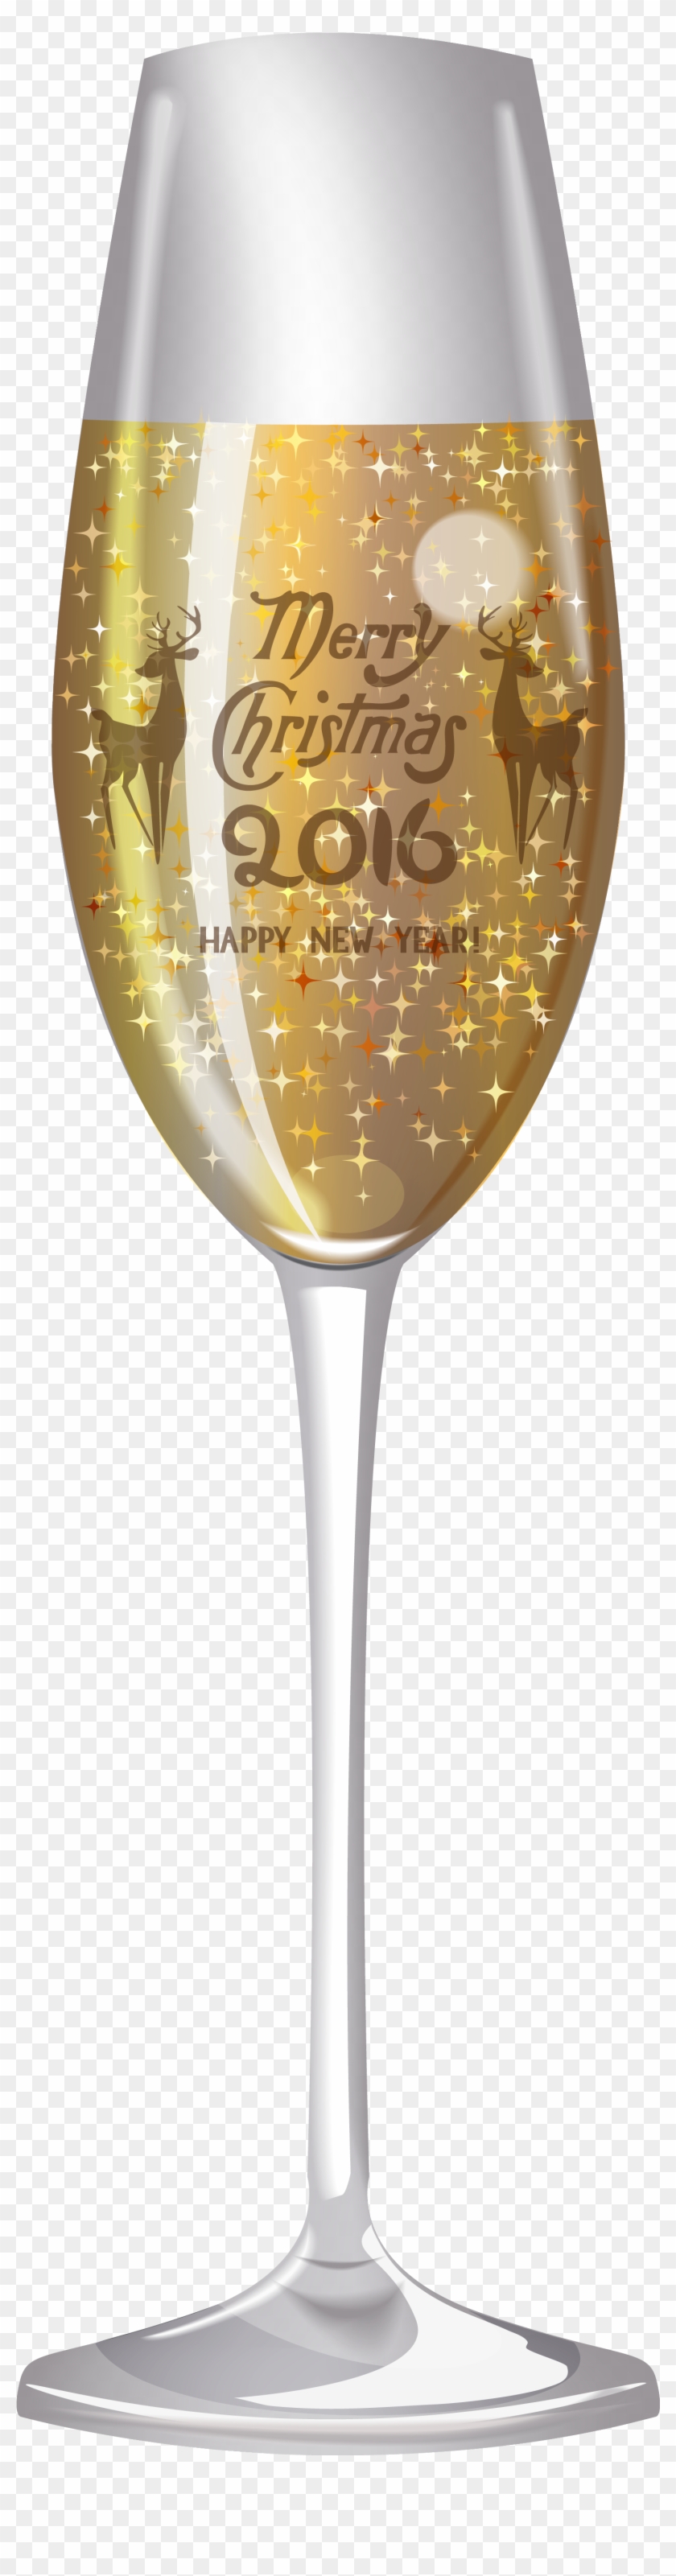 6 Champagne Glass Clipart Image - Champagne Stemware #532443